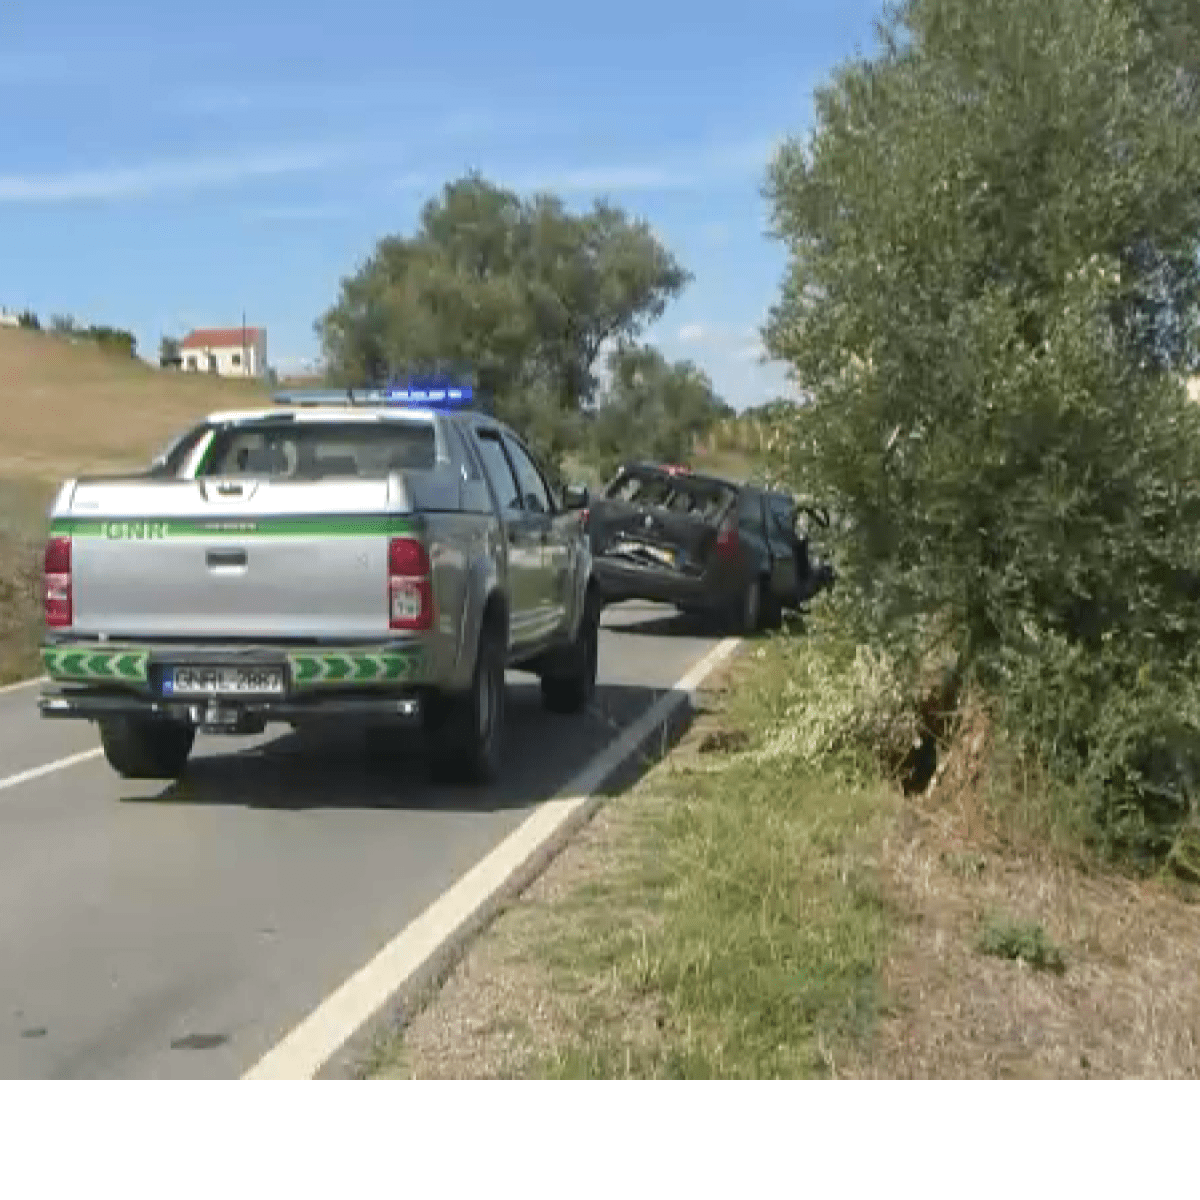 PSP alerta para esquema de falsos acidentes na estrada